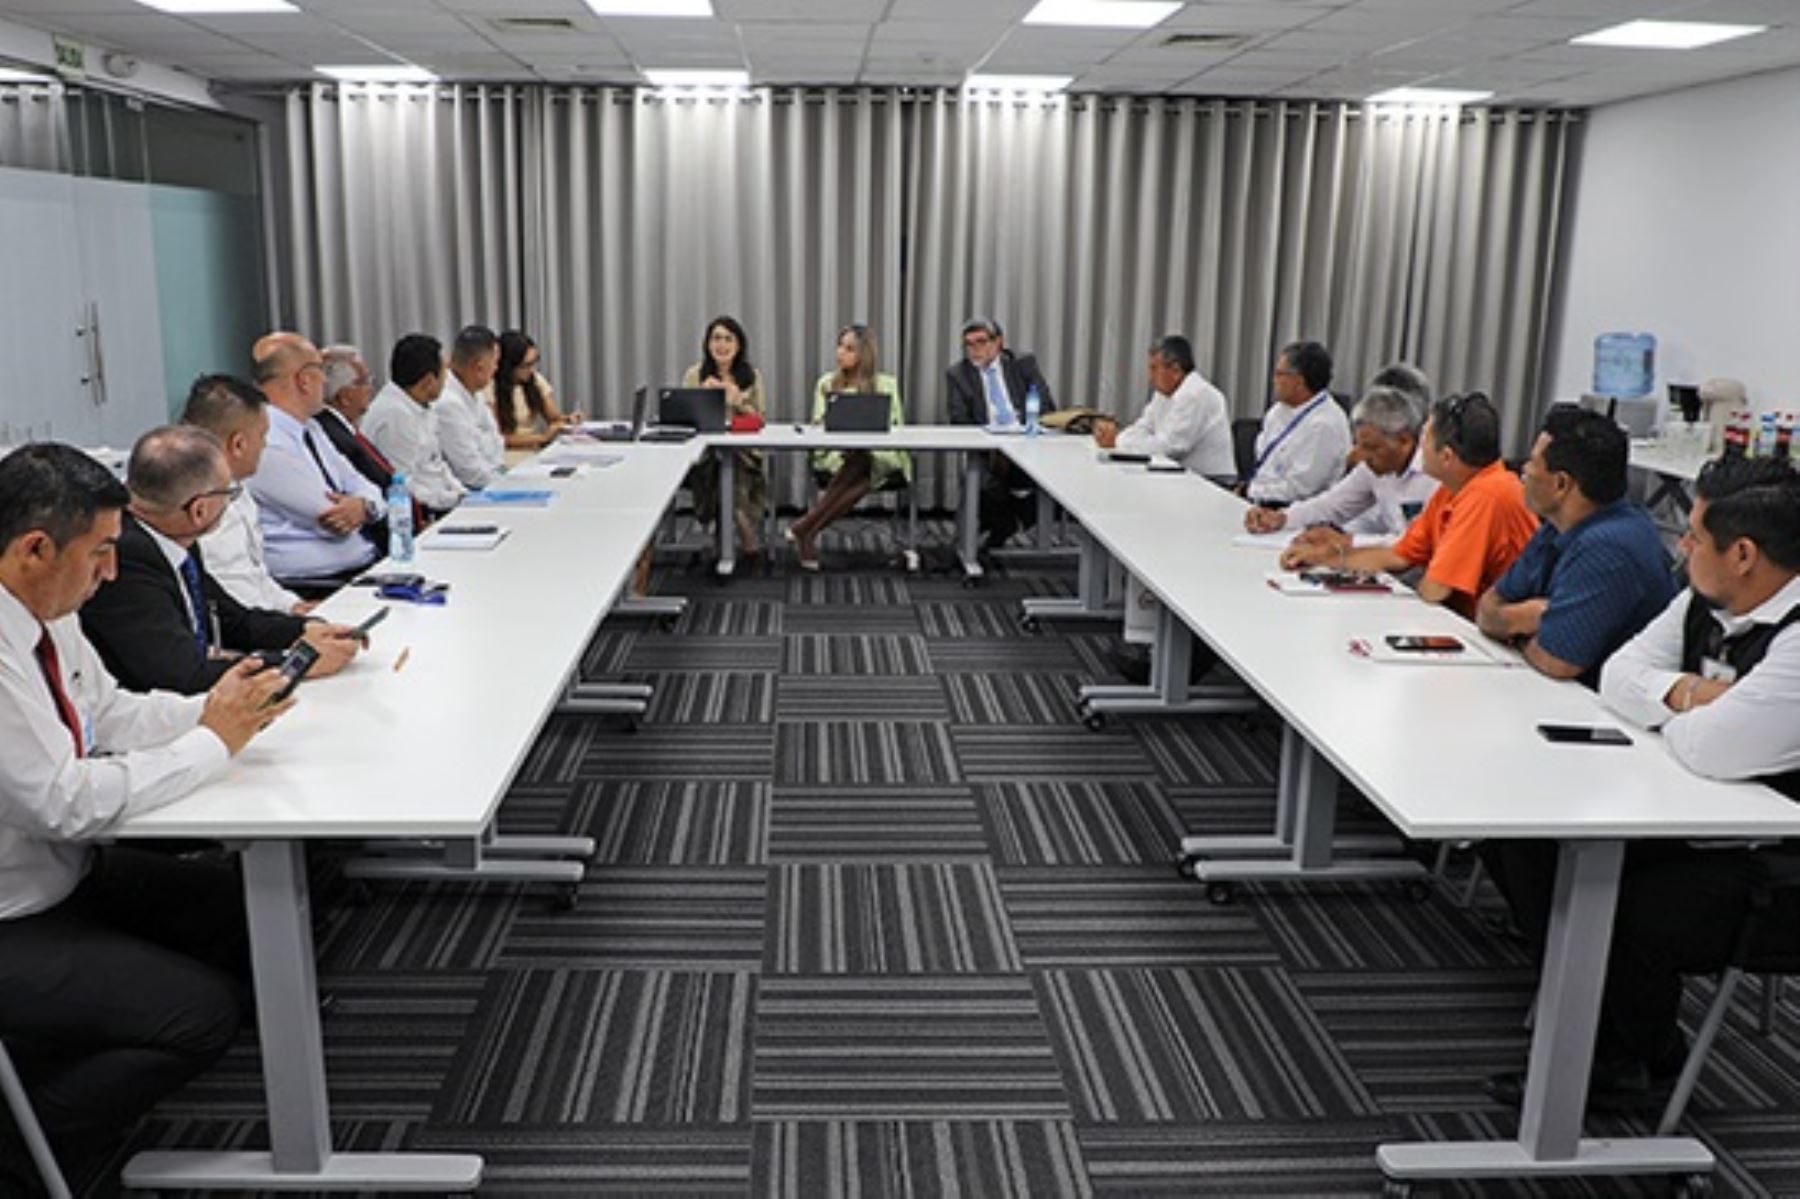 Representantes de Ositran sostuvieron reunión con los taxistas que operan en el Aeropuerto Internacional Jorge Chávez para ayudarlos a encontrar soluciones ante las nuevas reglas del uso del estacionamiento del primer terminal aéreo del país. Foto: Cortesía.